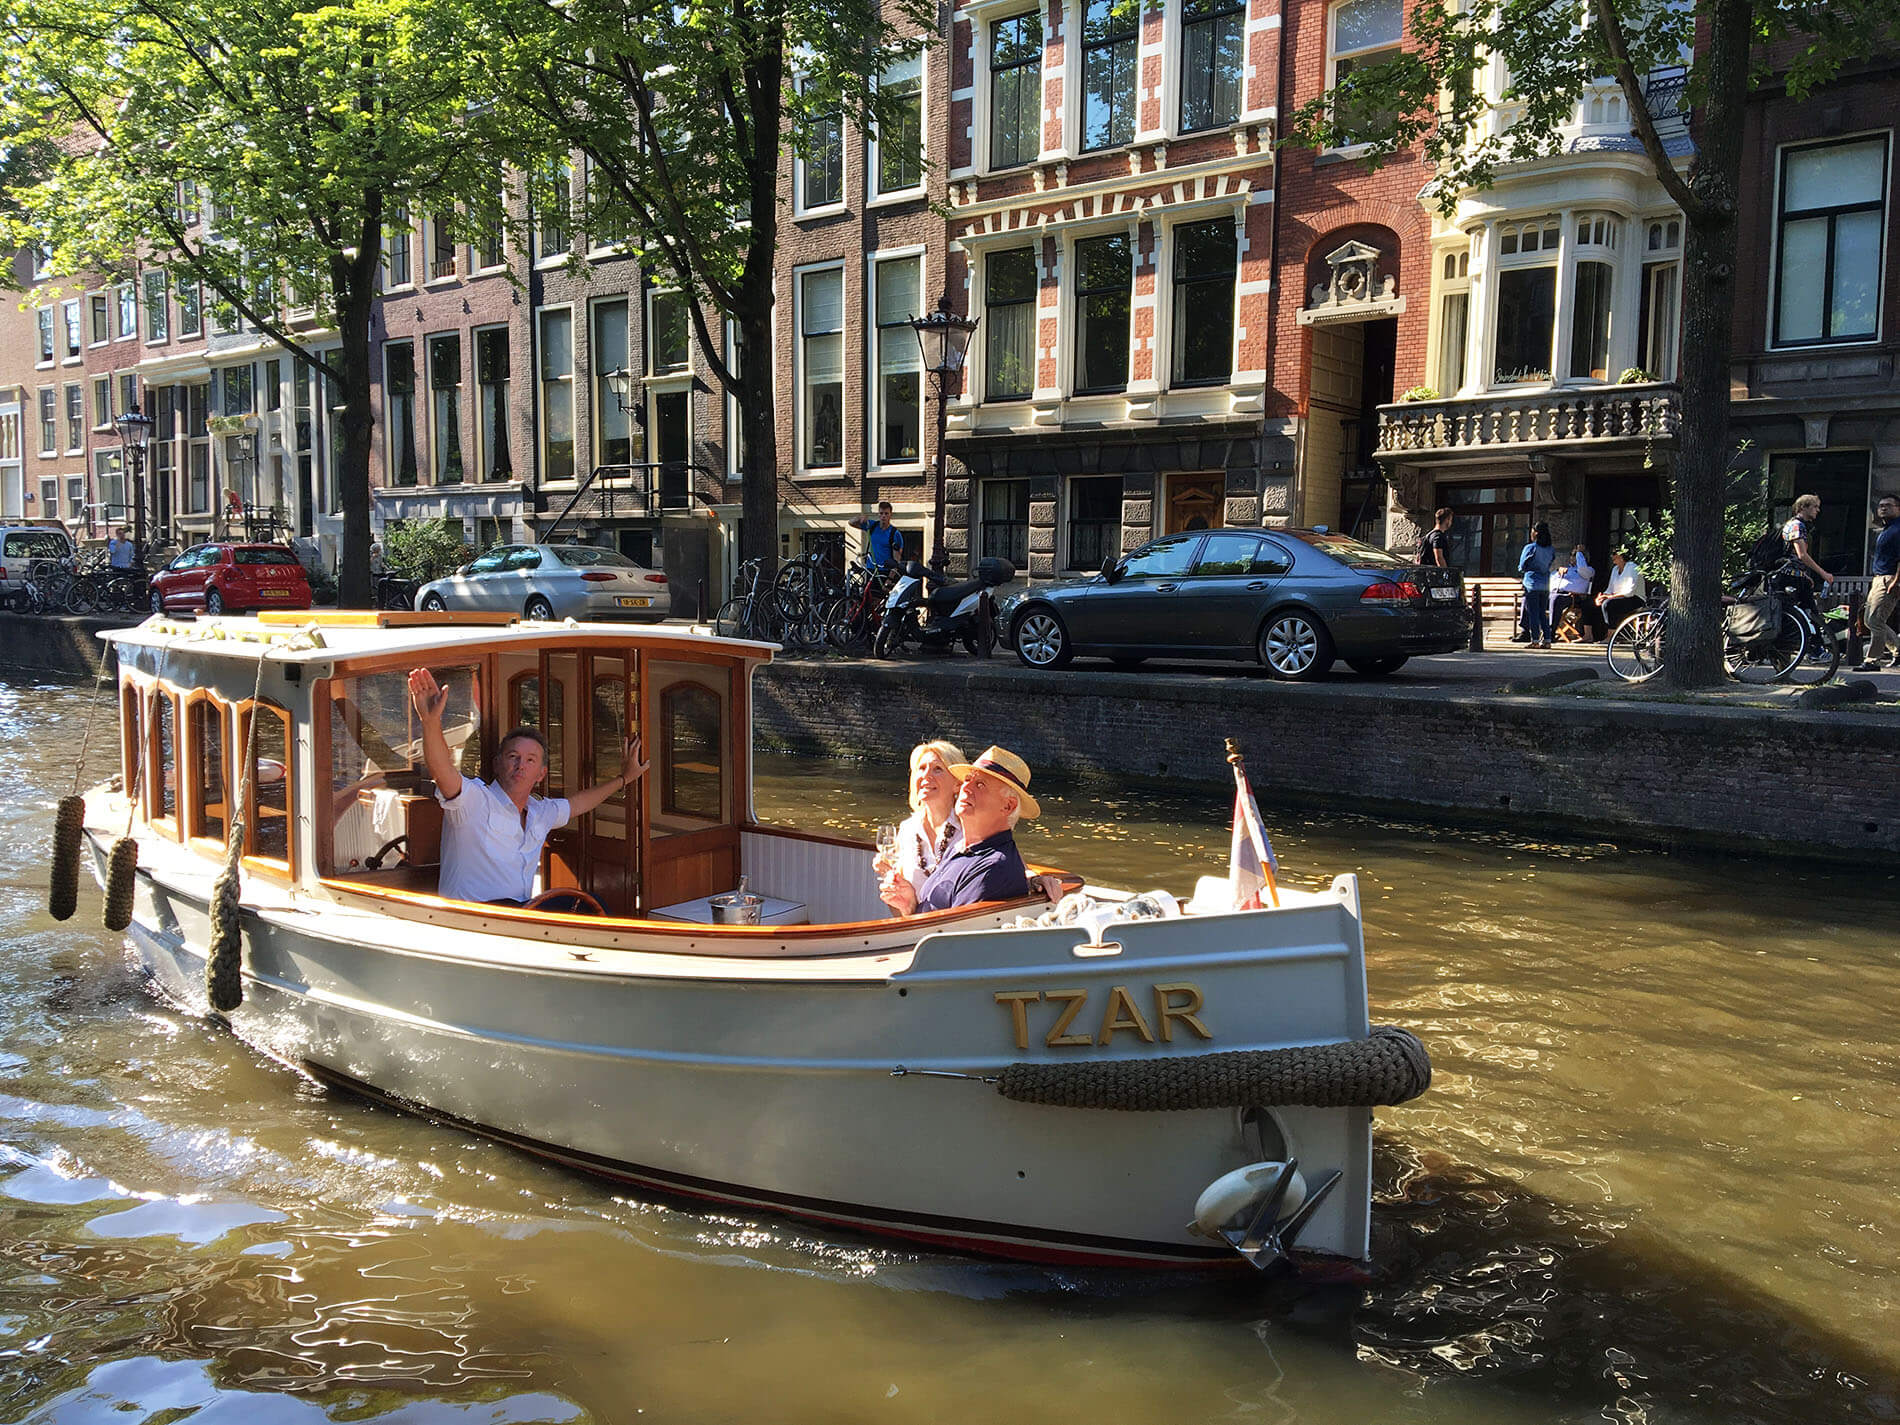 tzar private boat in amsterdam